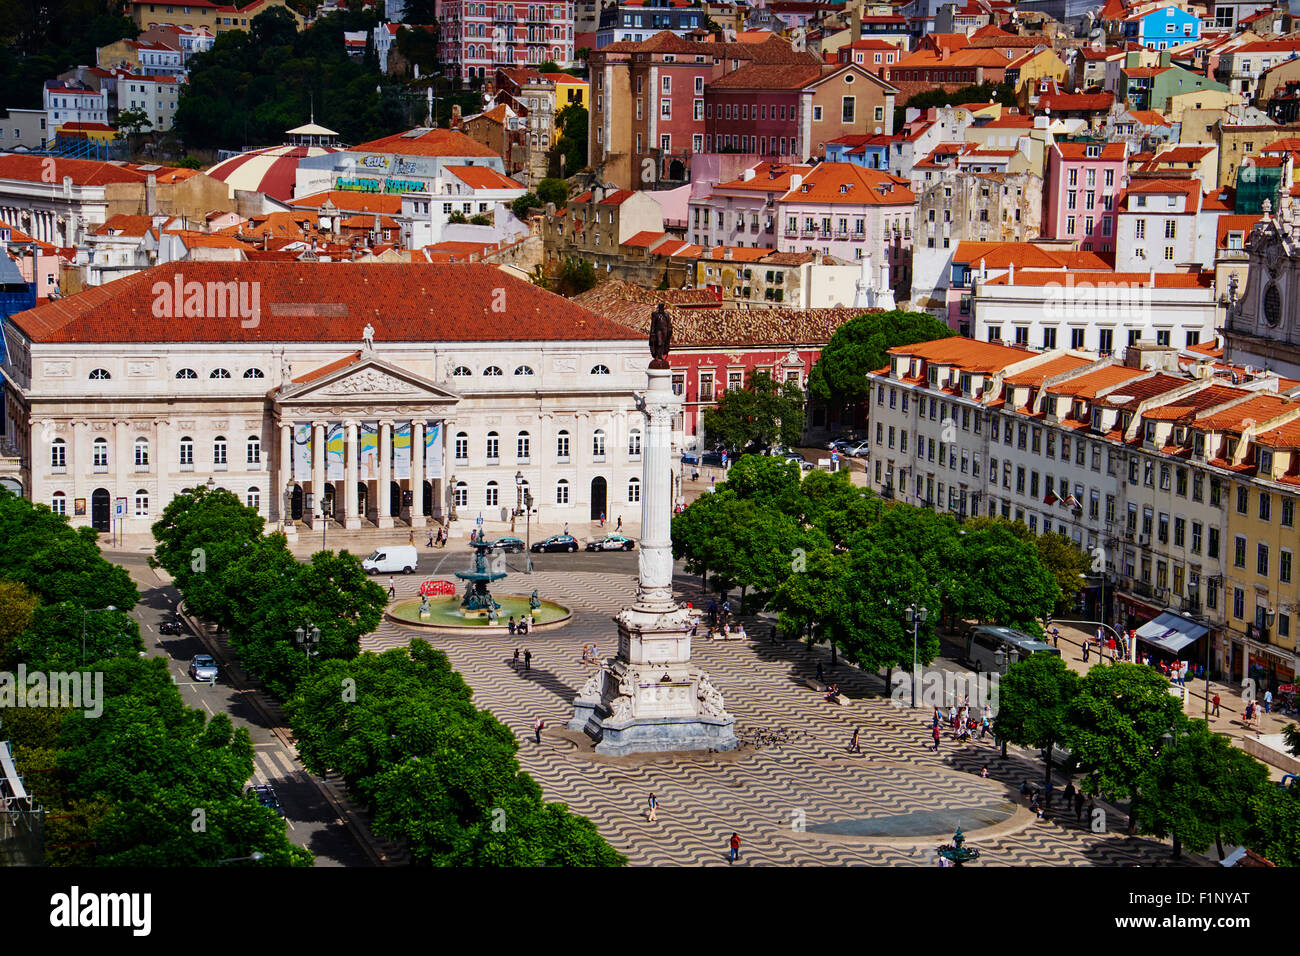 Portugal, Lisbon, Rossio square or Dom Pedro IV square Stock Photo